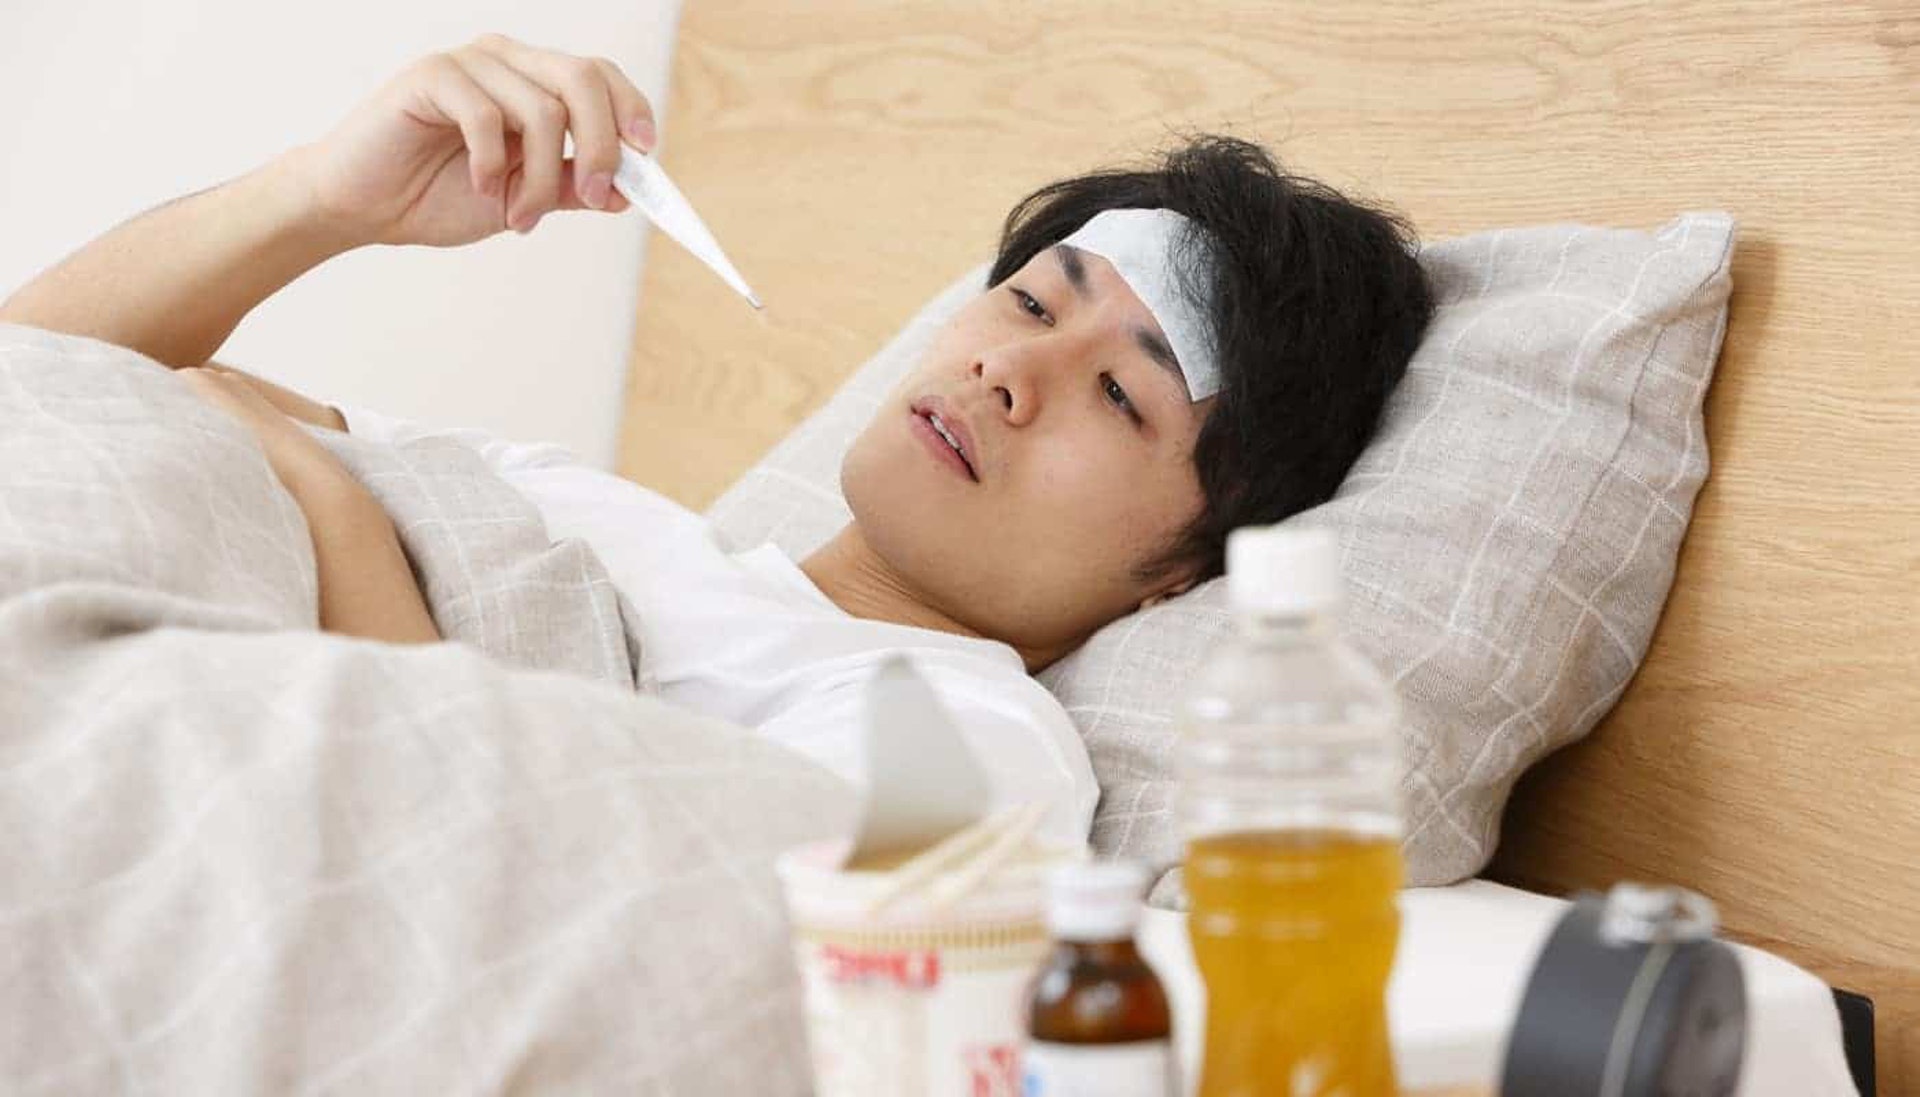 流感常見症狀包括發燒、全身乏力、肌肉疼痛、咳嗽等。(圖片: FreePik)